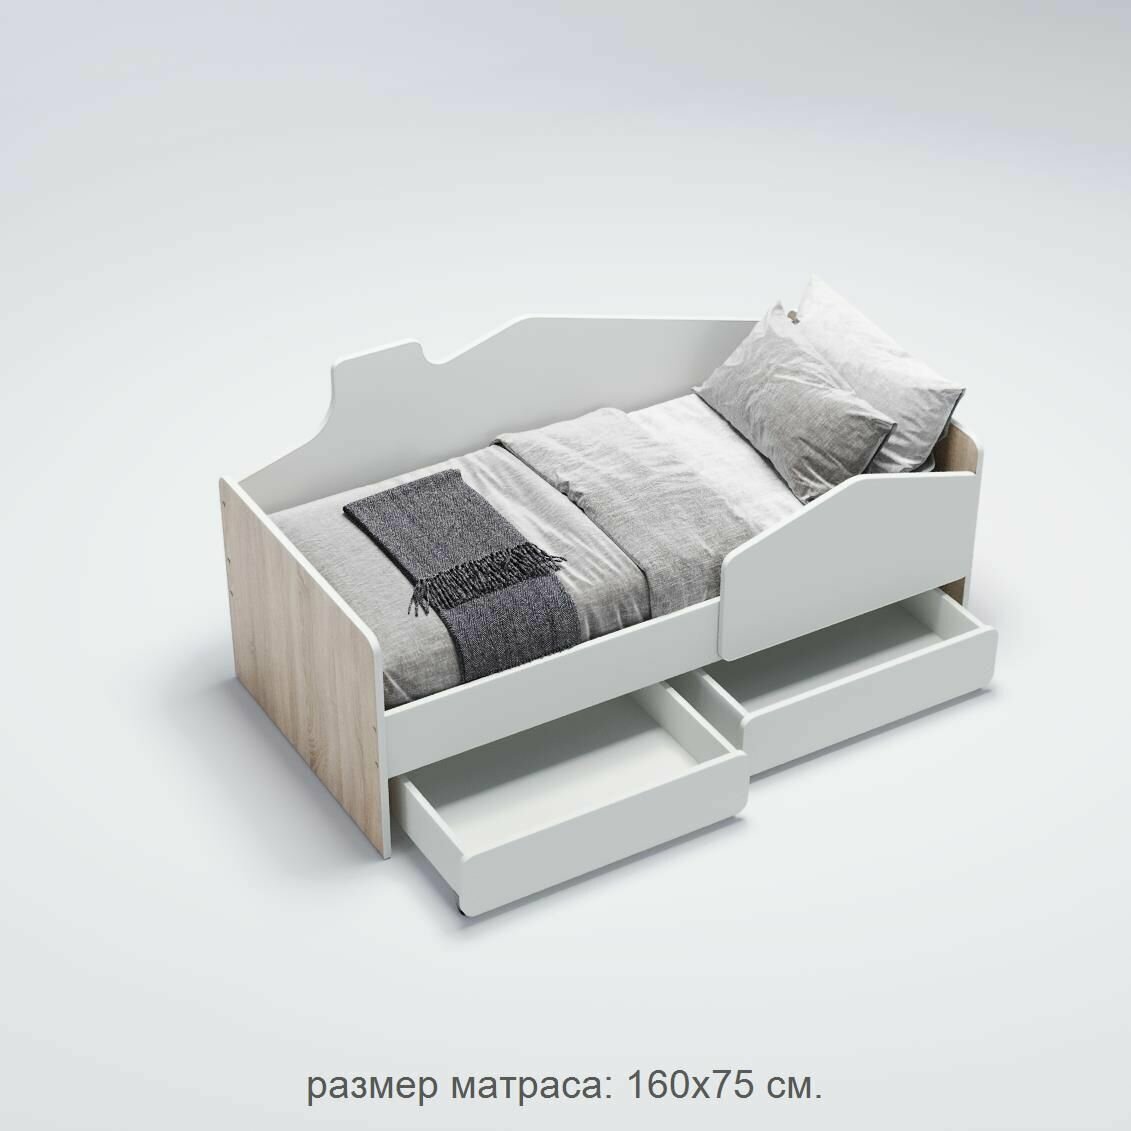 Детская кровать от 3 лет Легенда К203.02 домик сонома/белый , размер матраса: 160х75